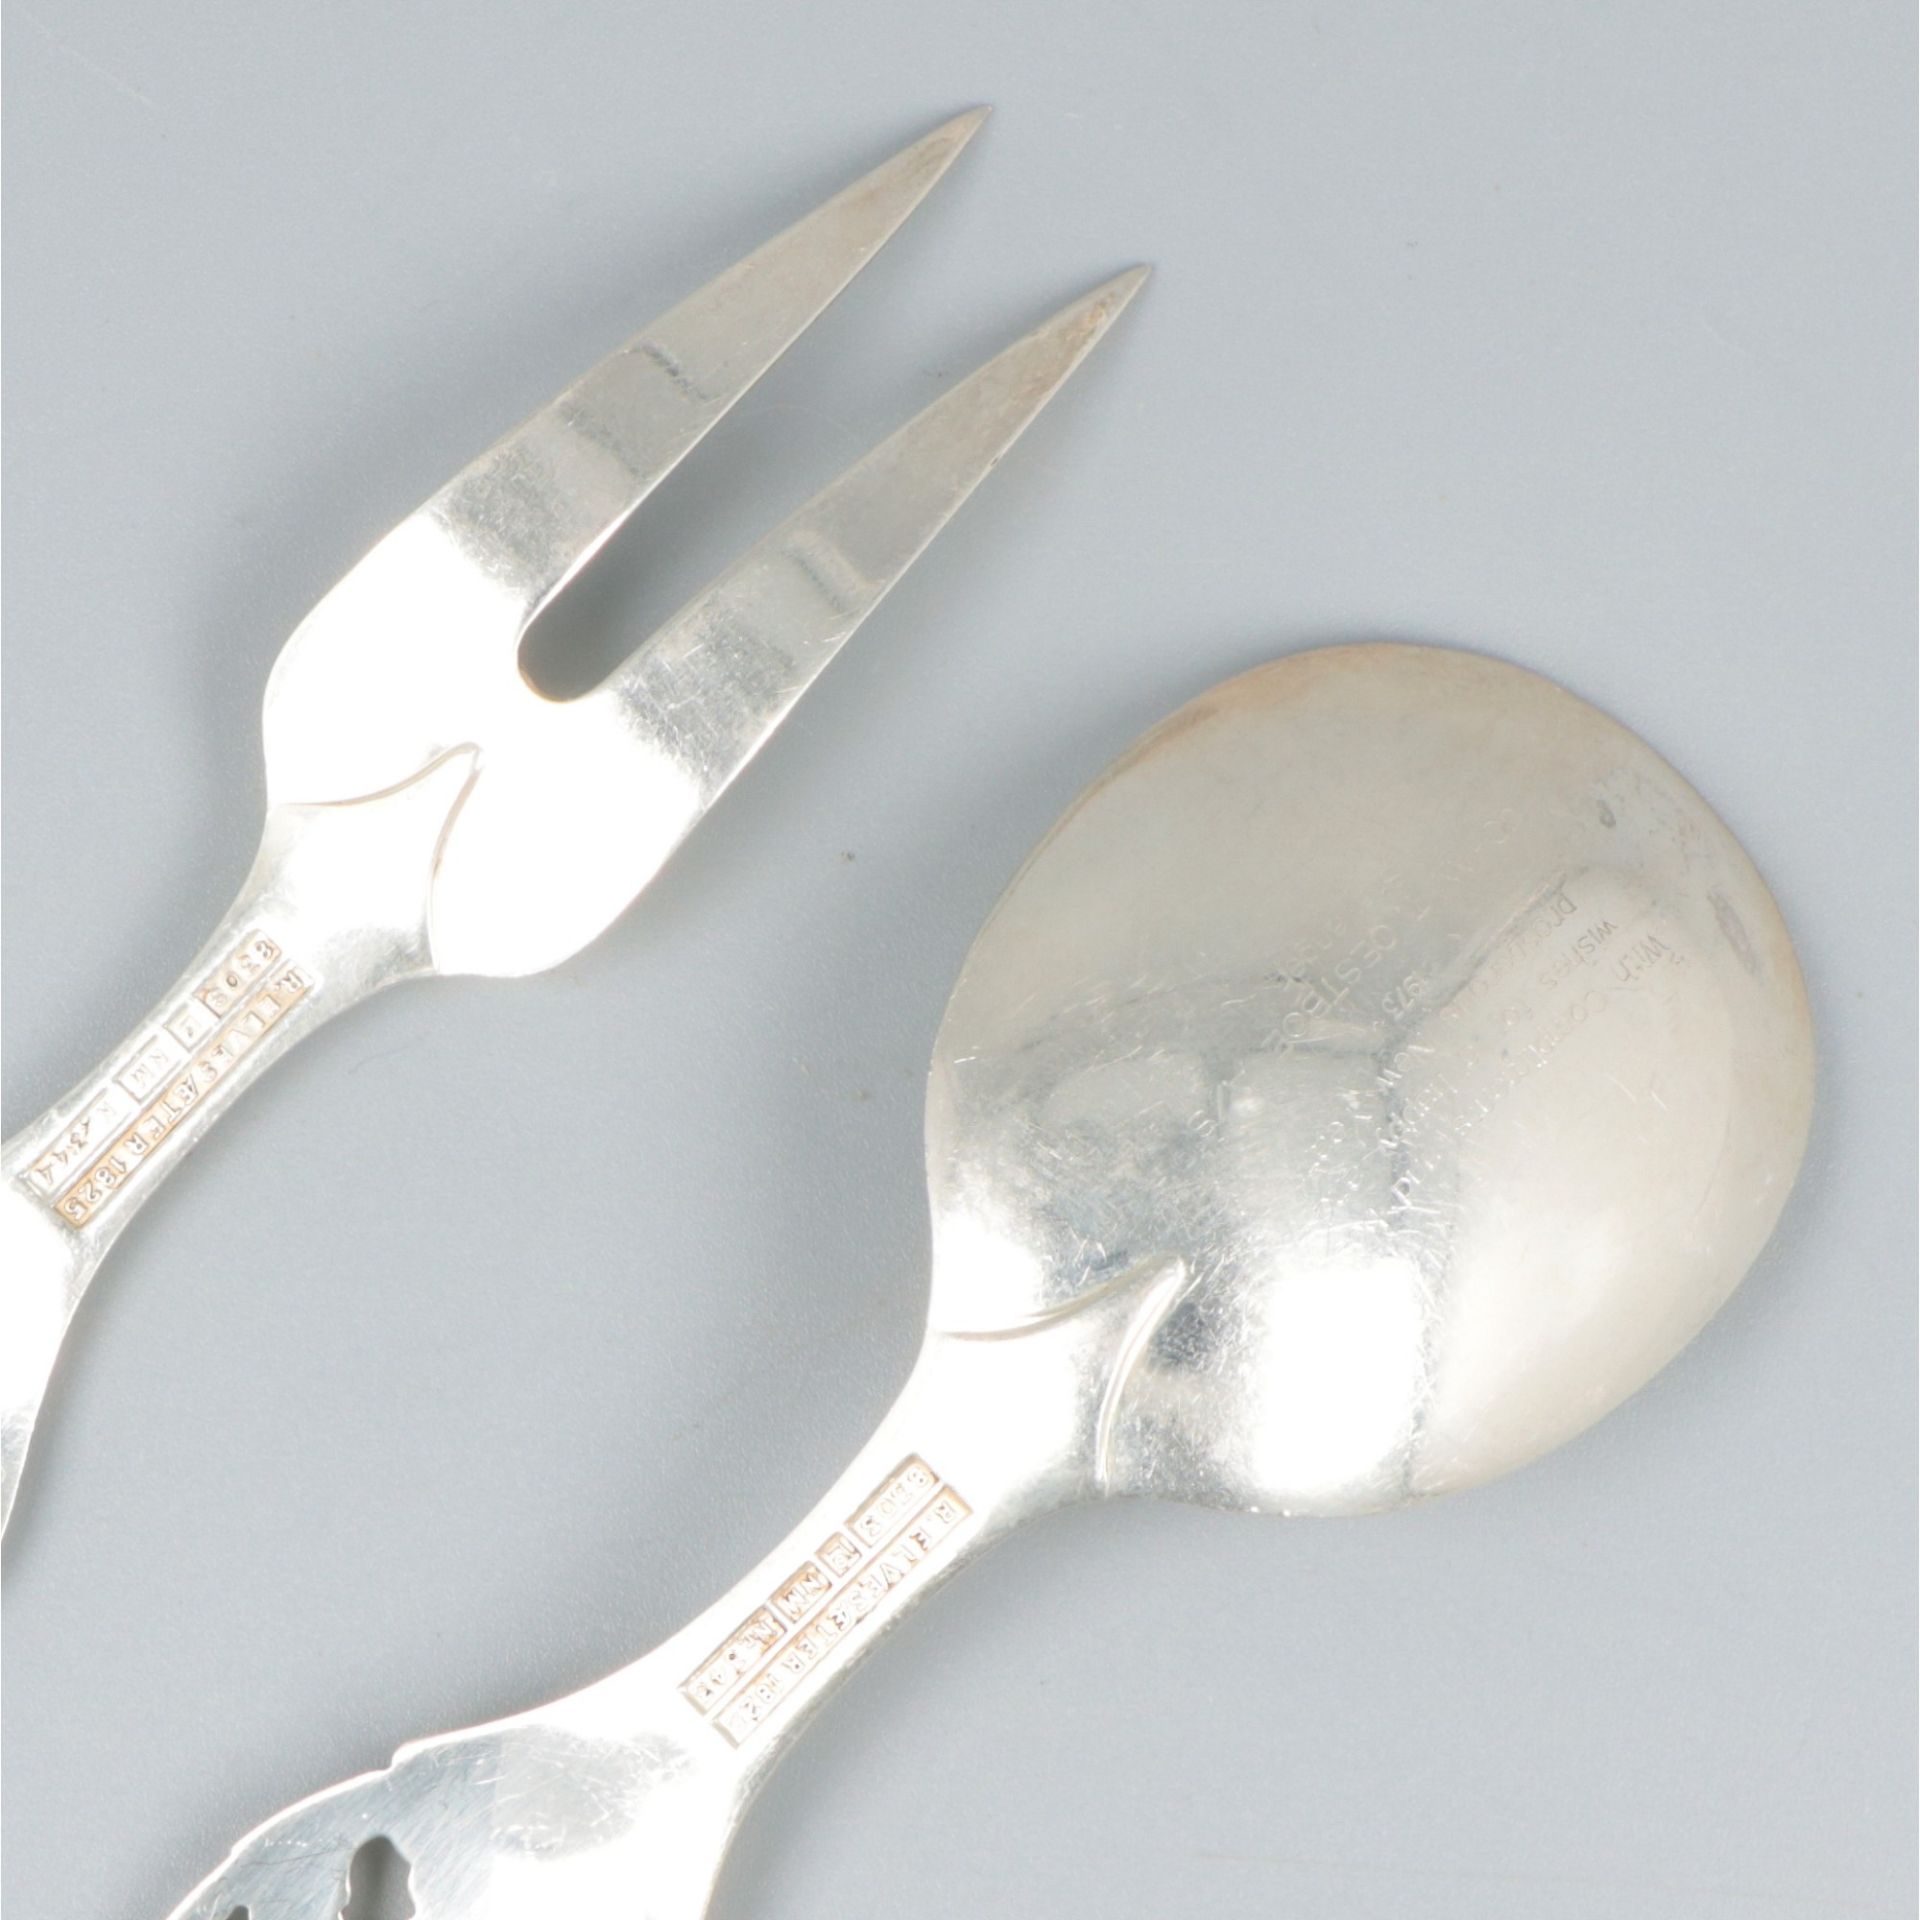 Jam spoon (Elvesæter no. 343) and serving fork (Elvesæter no. 344) (design by Brødrene Lohne, 1954)  - Bild 4 aus 7